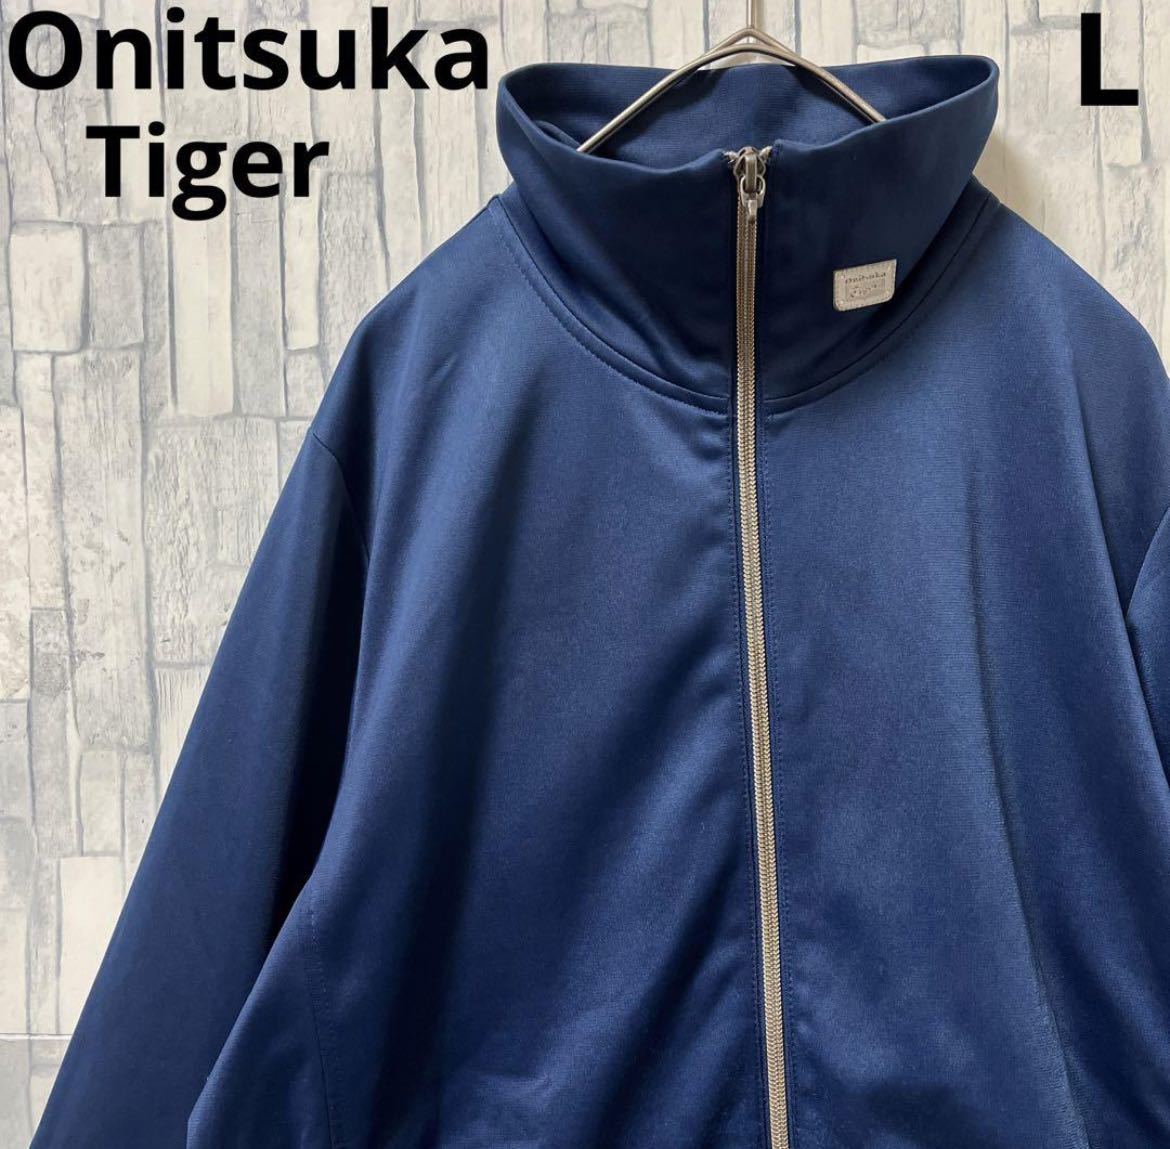 Onitsuka Tiger オニツカタイガー アシックス ジャージ 上 トラックジャケット サイズL ワンポイントロゴ シンプルロゴ 長袖 送料無料